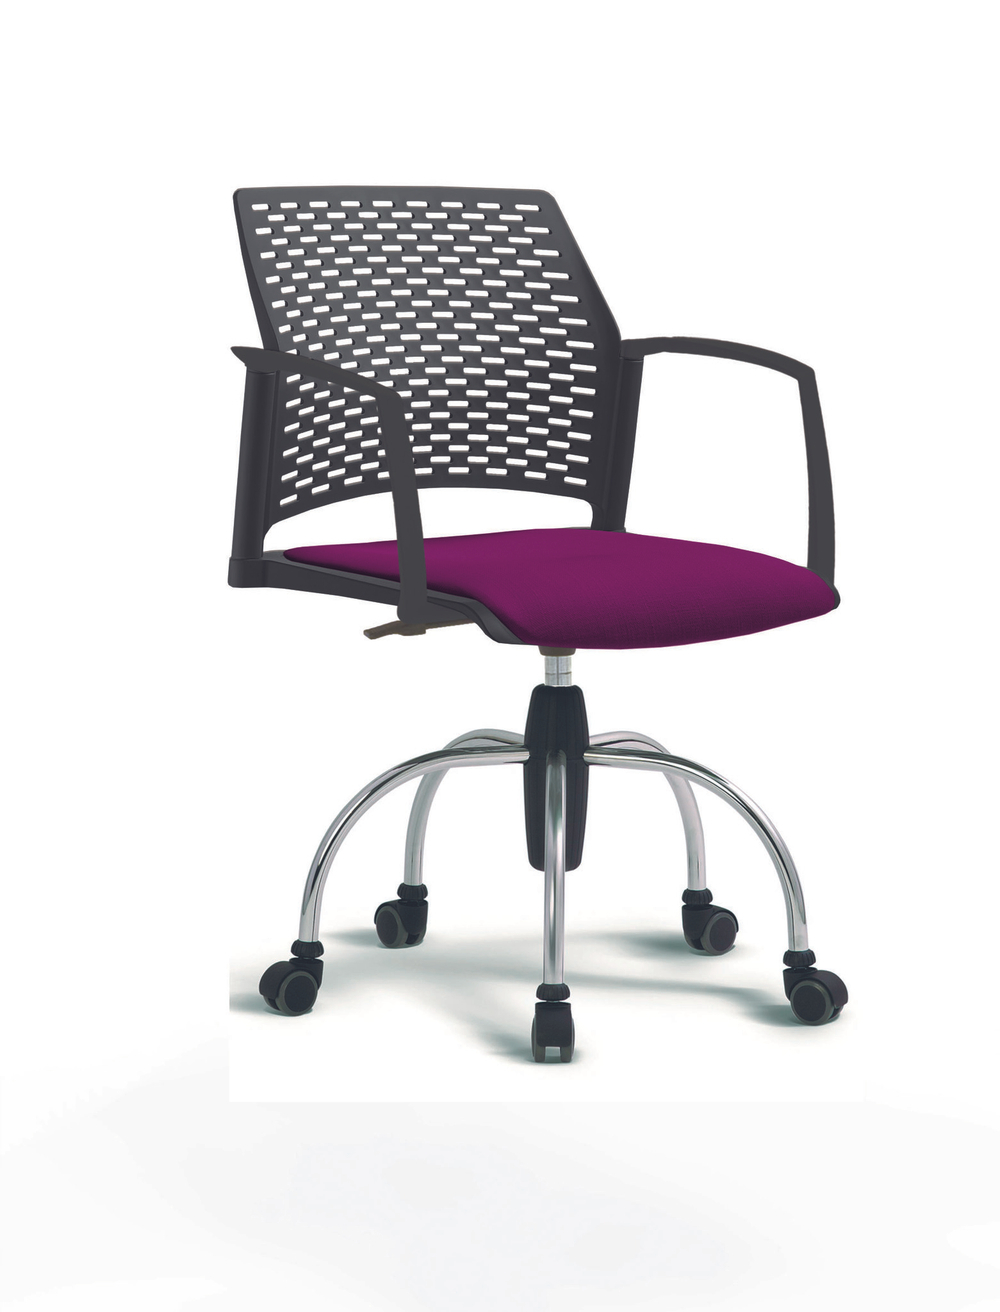 Кресло Rewind каркас хромированный, пластик черный, база паук хромированная, с закрытыми подлокотниками, сиденье фиолетовое